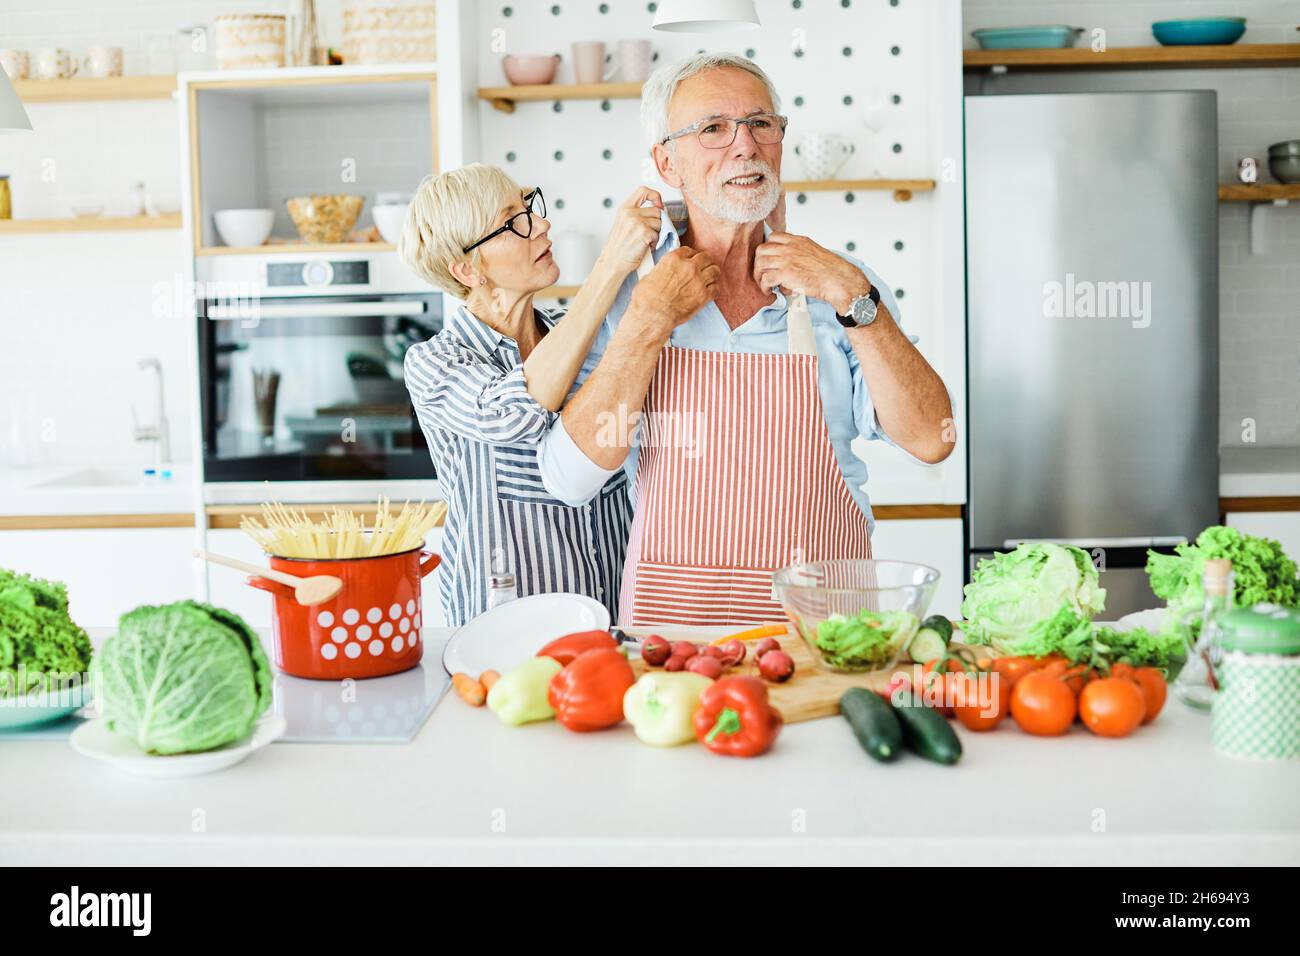 Liebe Küche Senior Frau Mann Paar Heim Ruhestand glückliches Essen lächelnd Mann Frau zusammen Person Stockfoto